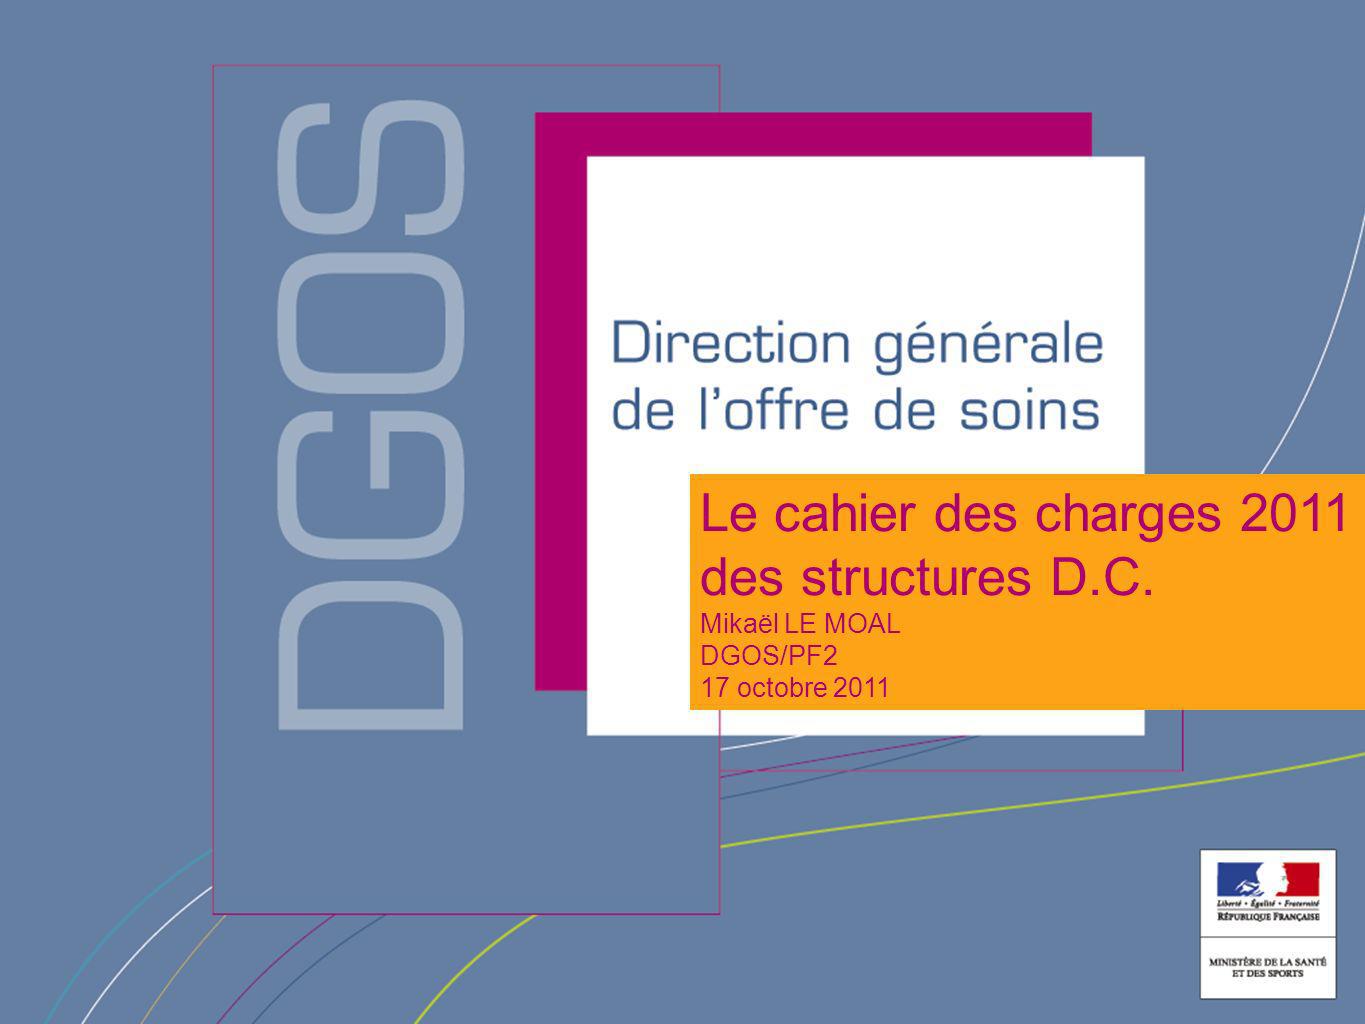 Le cahier des charges 2011 des structures D.C. Mikaël LE MOAL DGOS/PF2